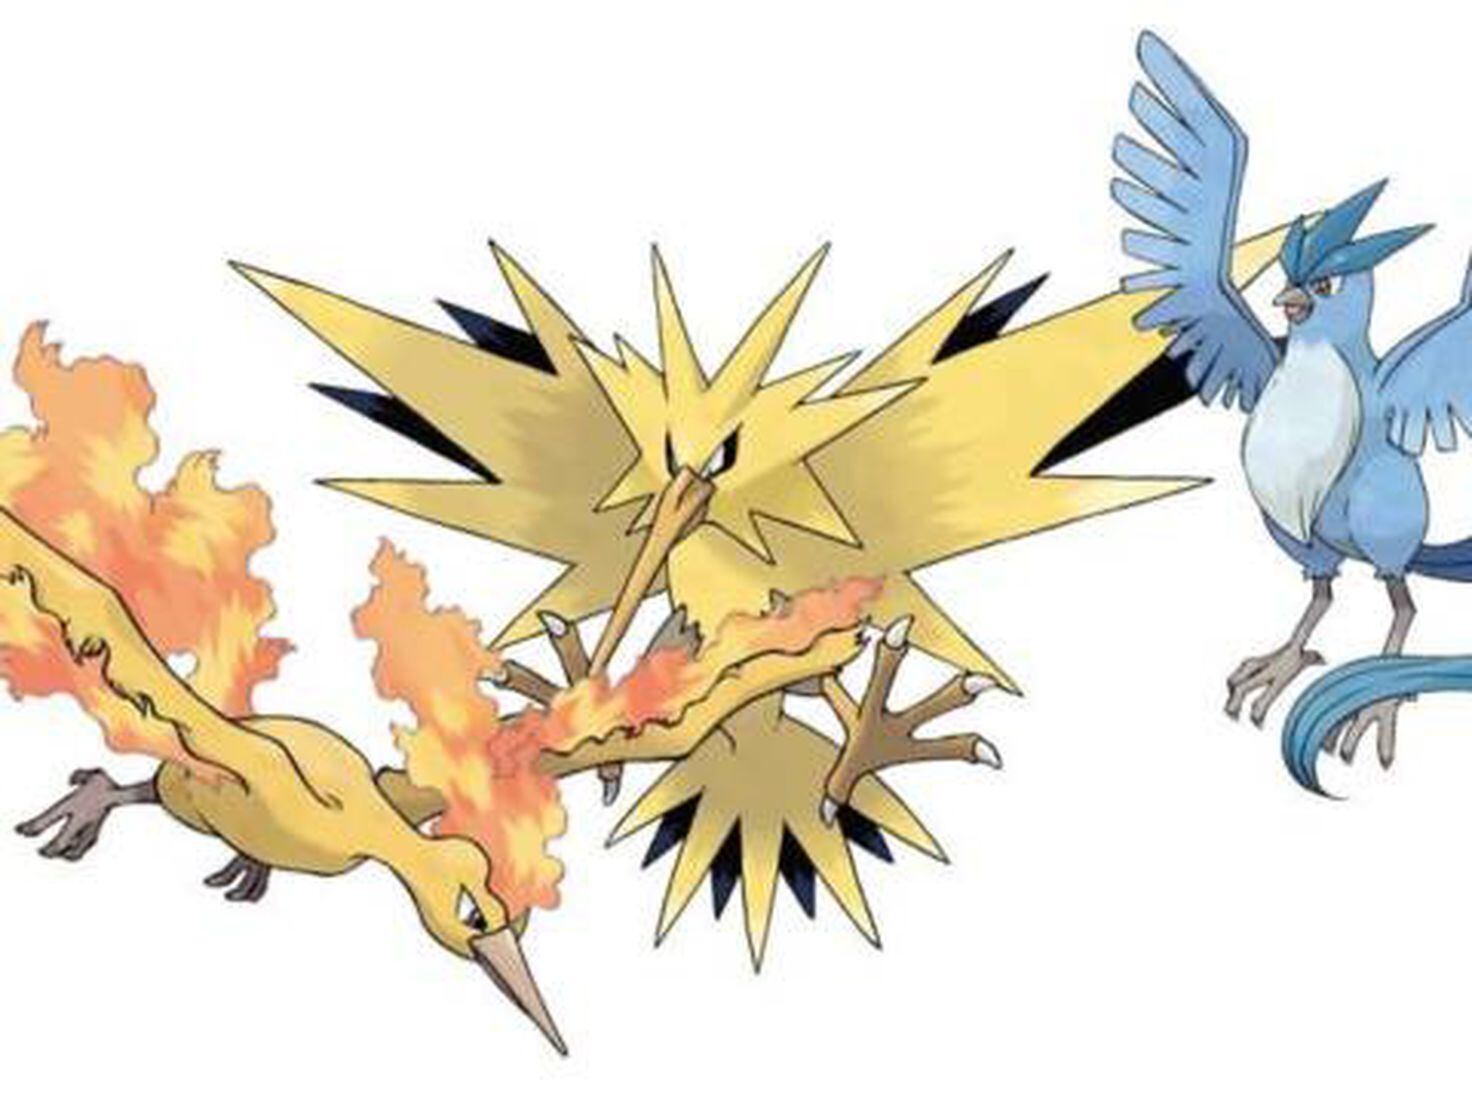 Pokémon GO: Cómo capturar a Articuno, Zapdos y Moltres Galar